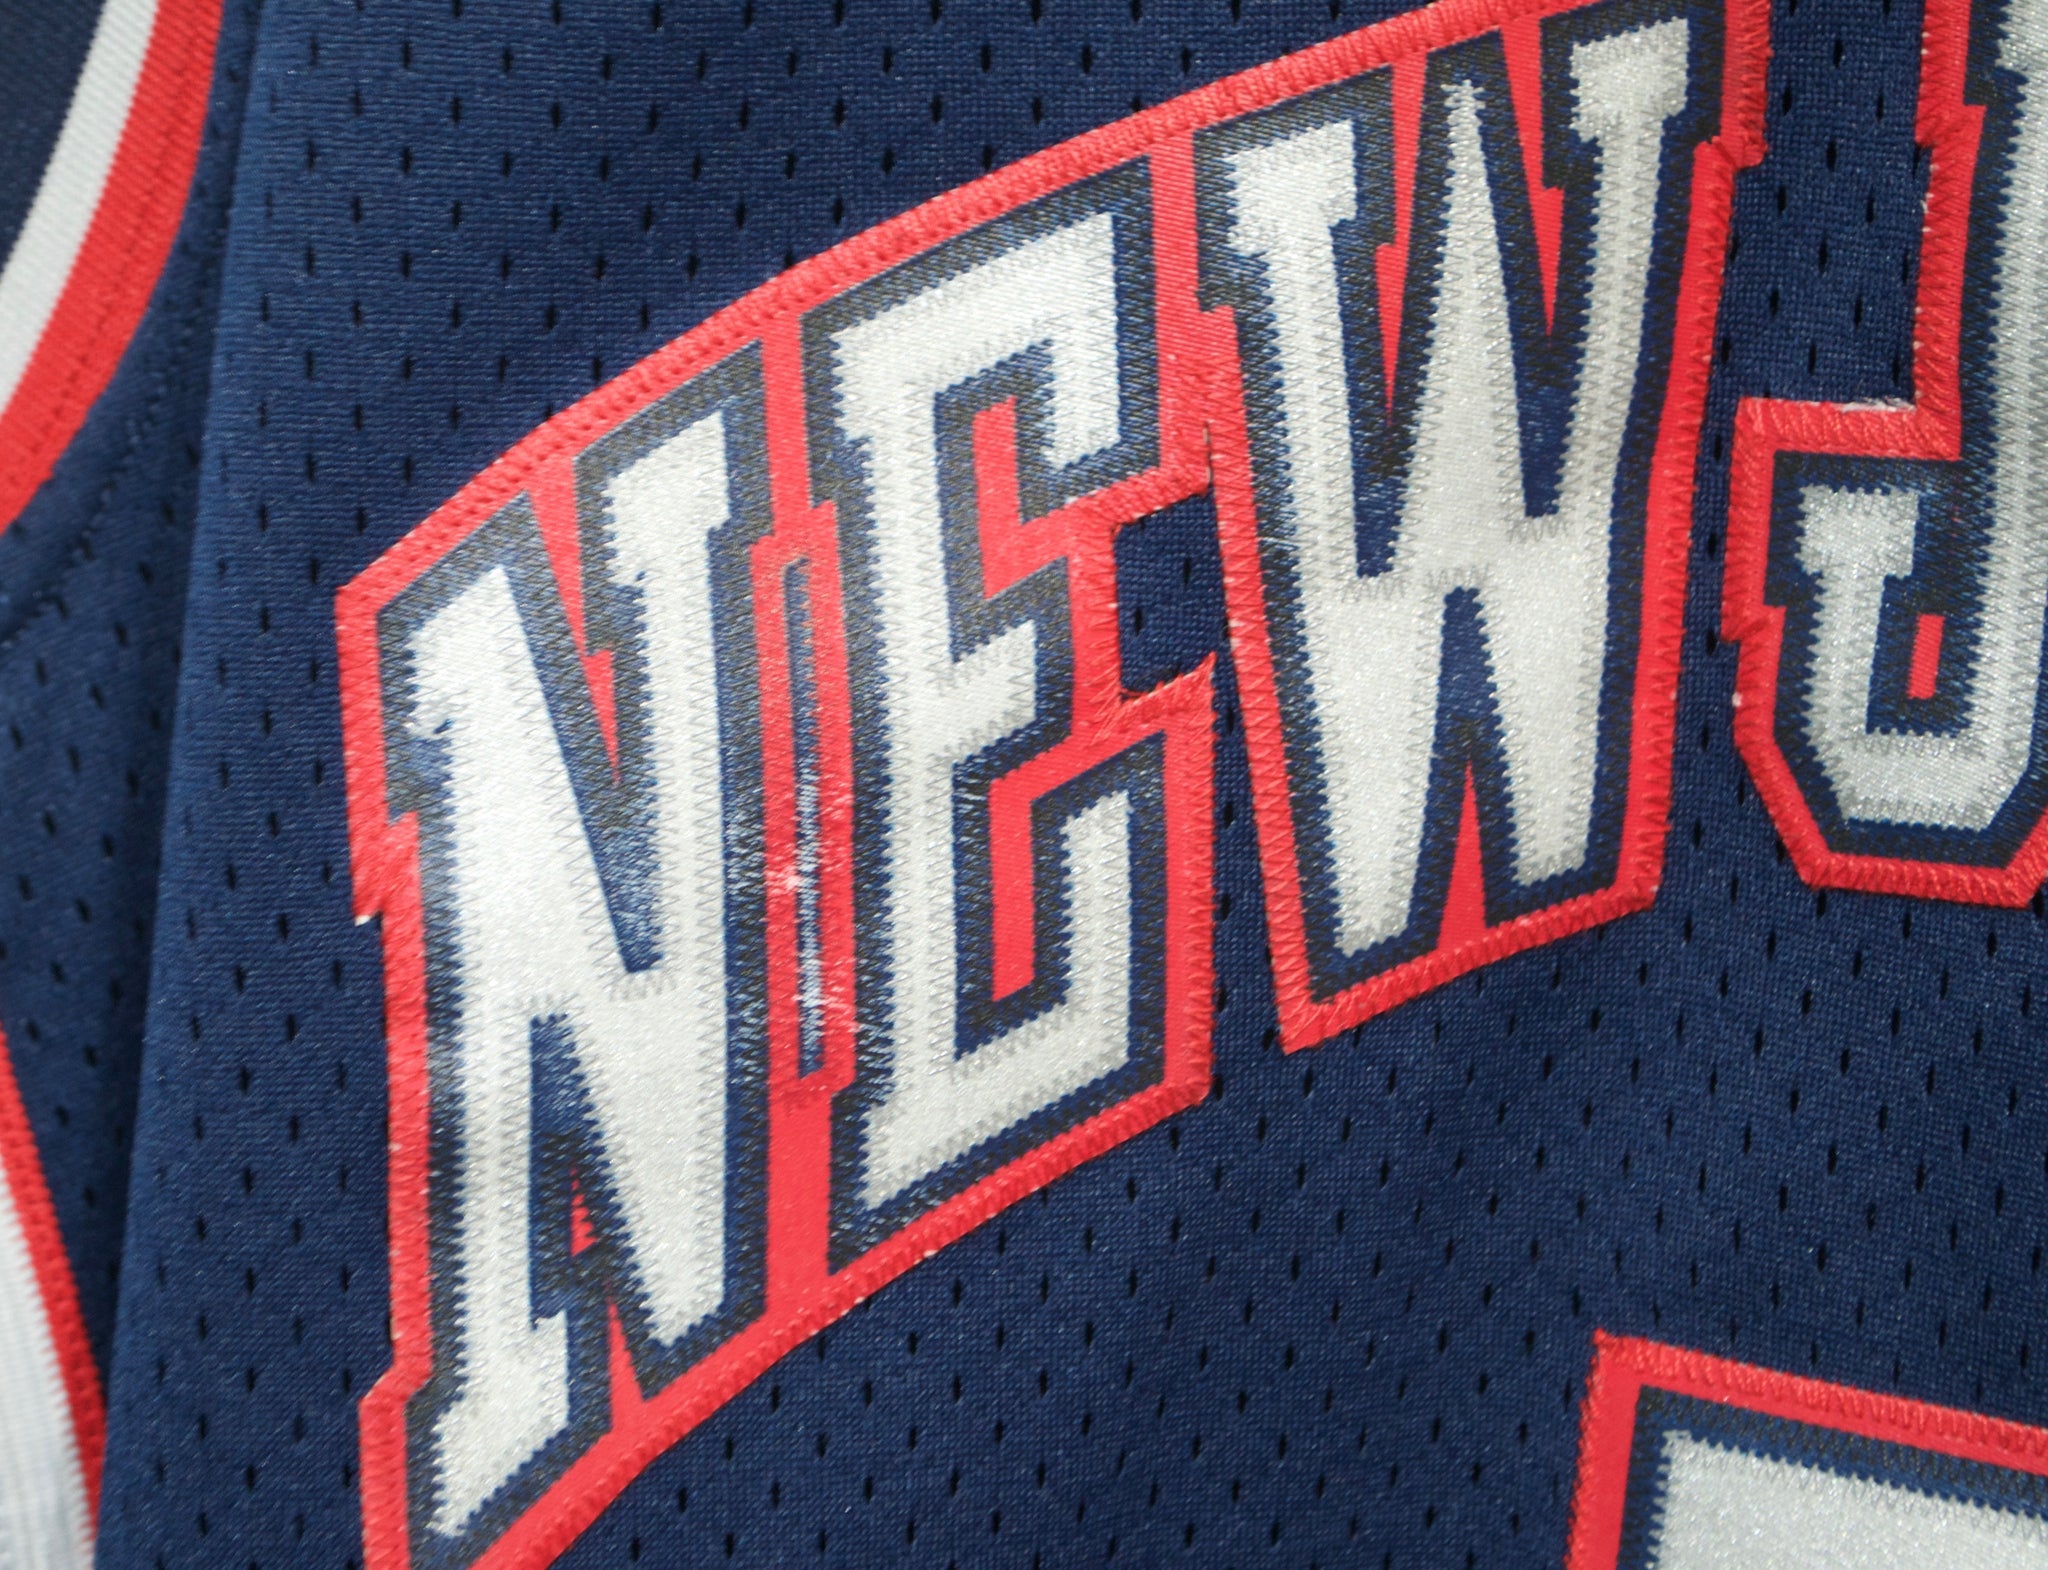 Jason Kidd Nets Jersey sz 5XL New w. Tags – First Team Vintage